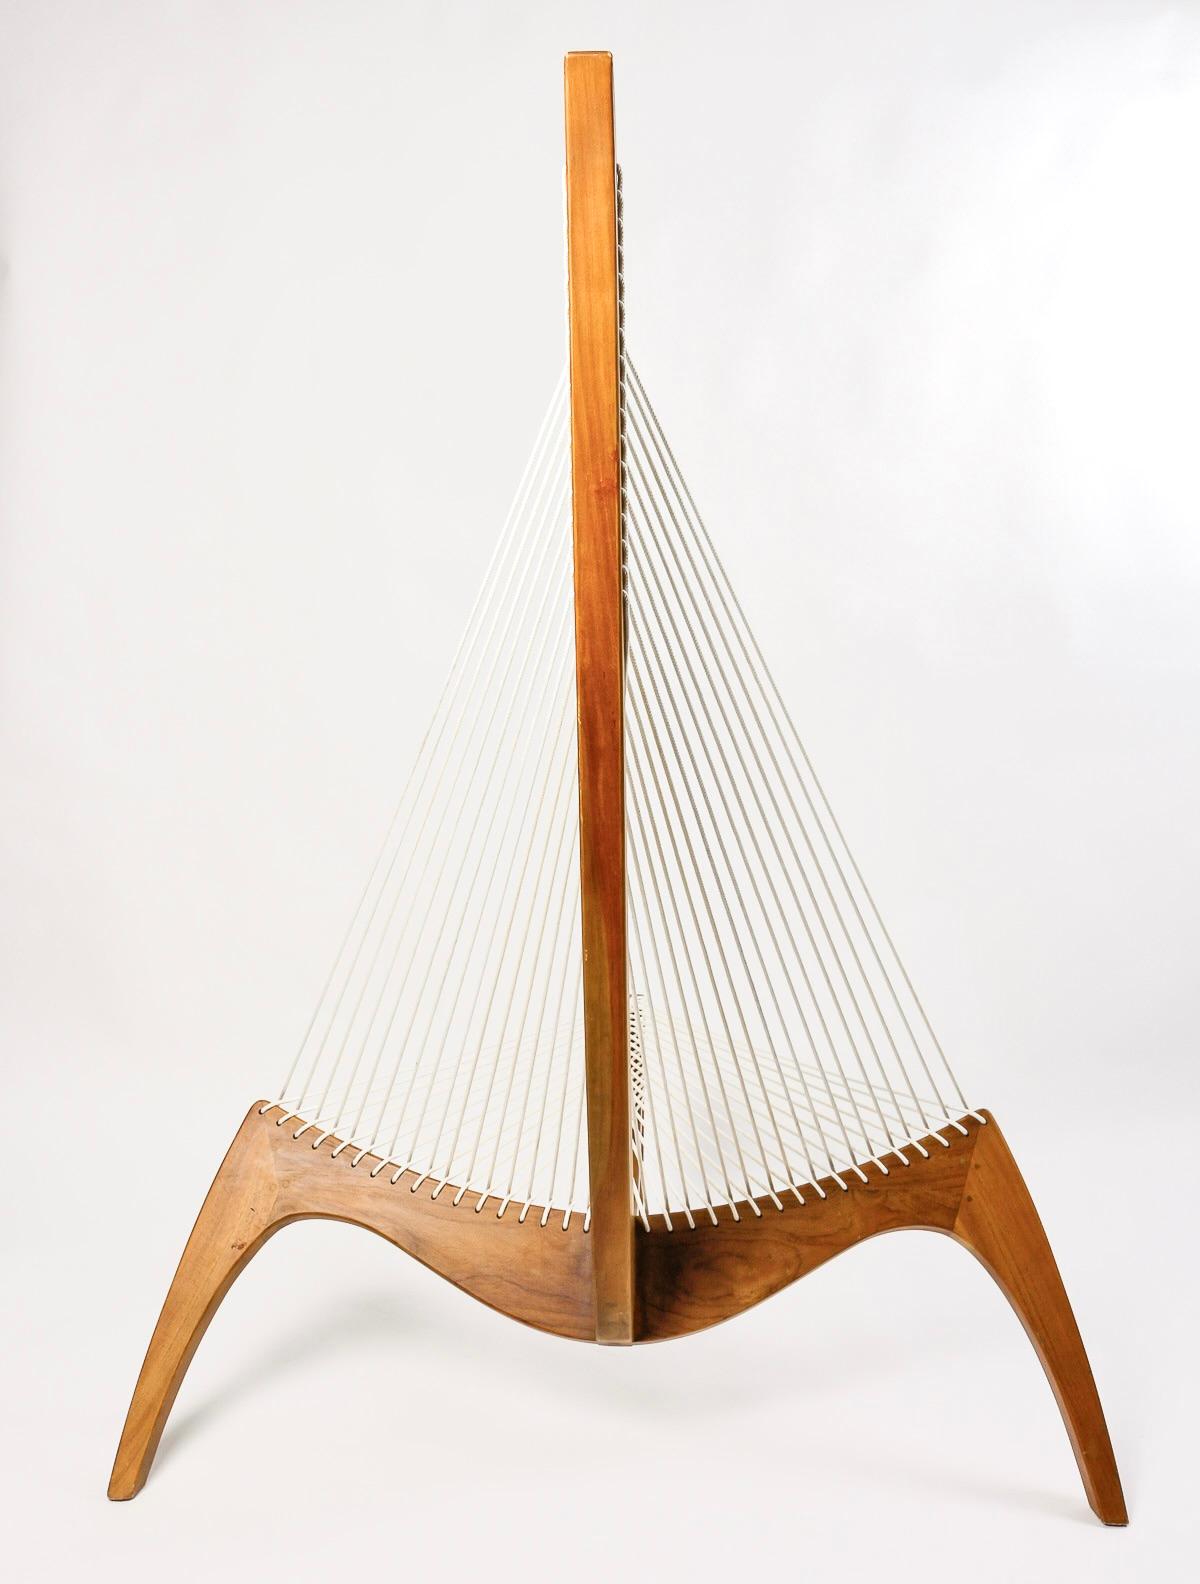 1970 Pair harp chair by Jørgen Høvelskov for Christensen & Larsen Møbelhandværk. 1